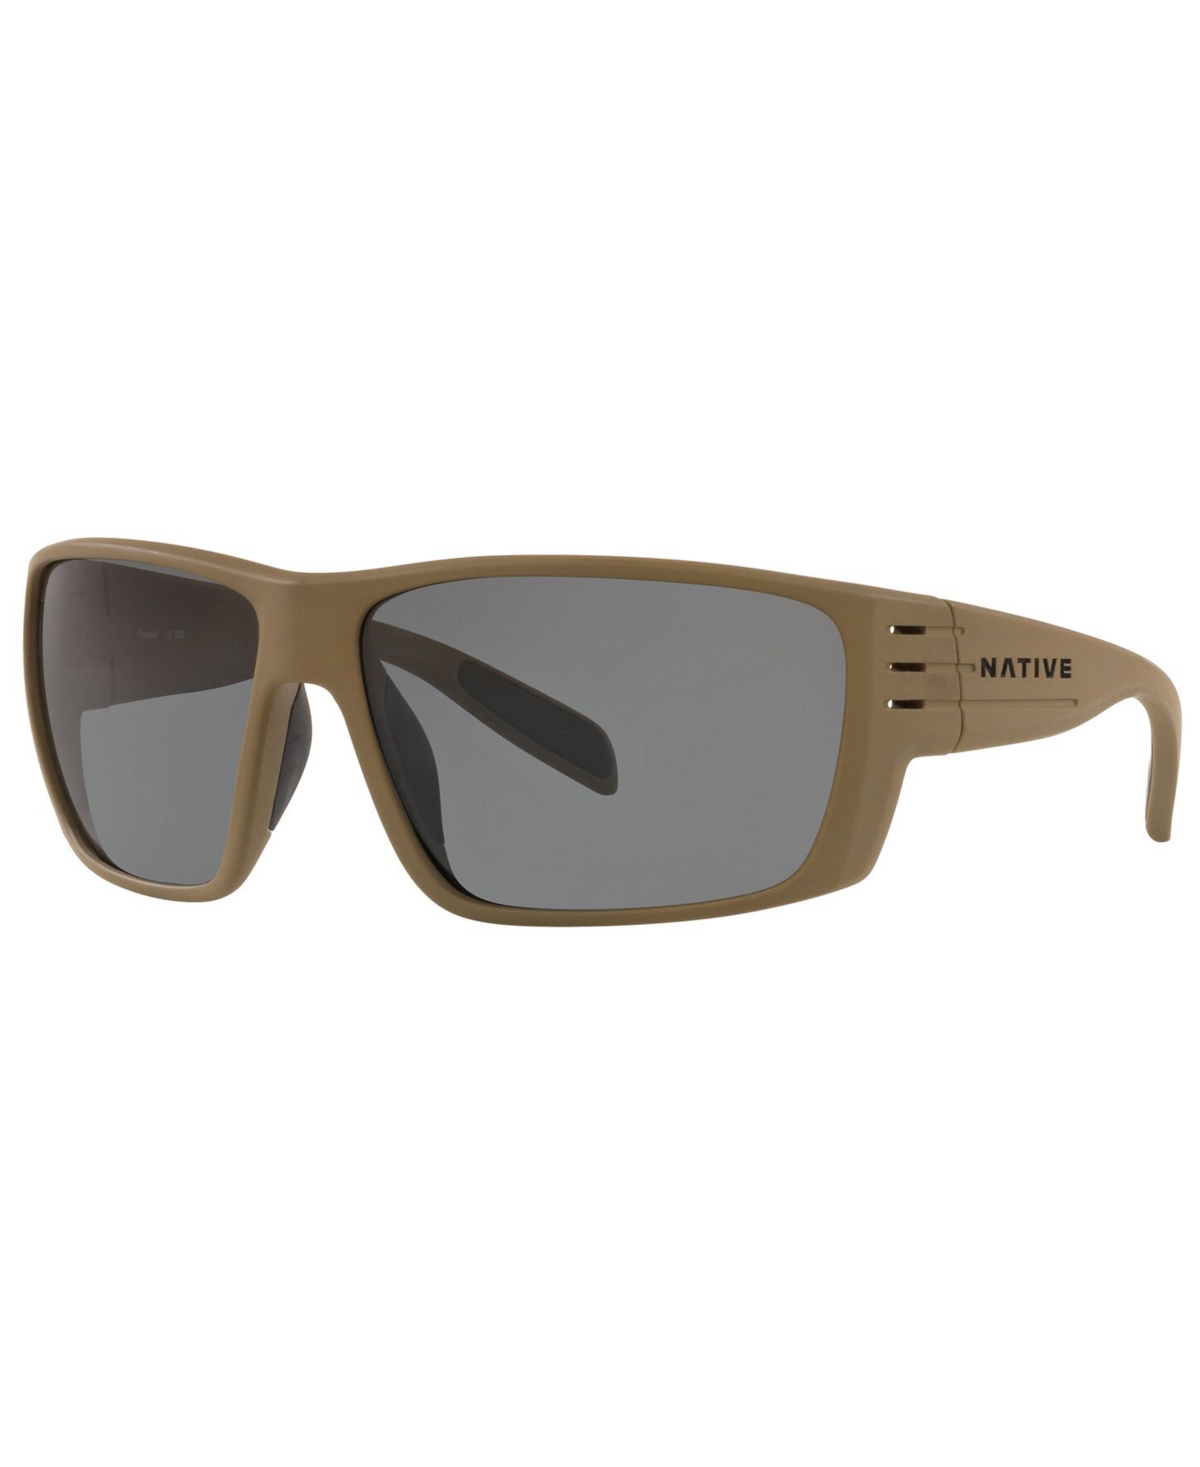 Native Eyewear Native Men's Polarized Sunglasses, Xd9014 66 In Desert Tan,grey